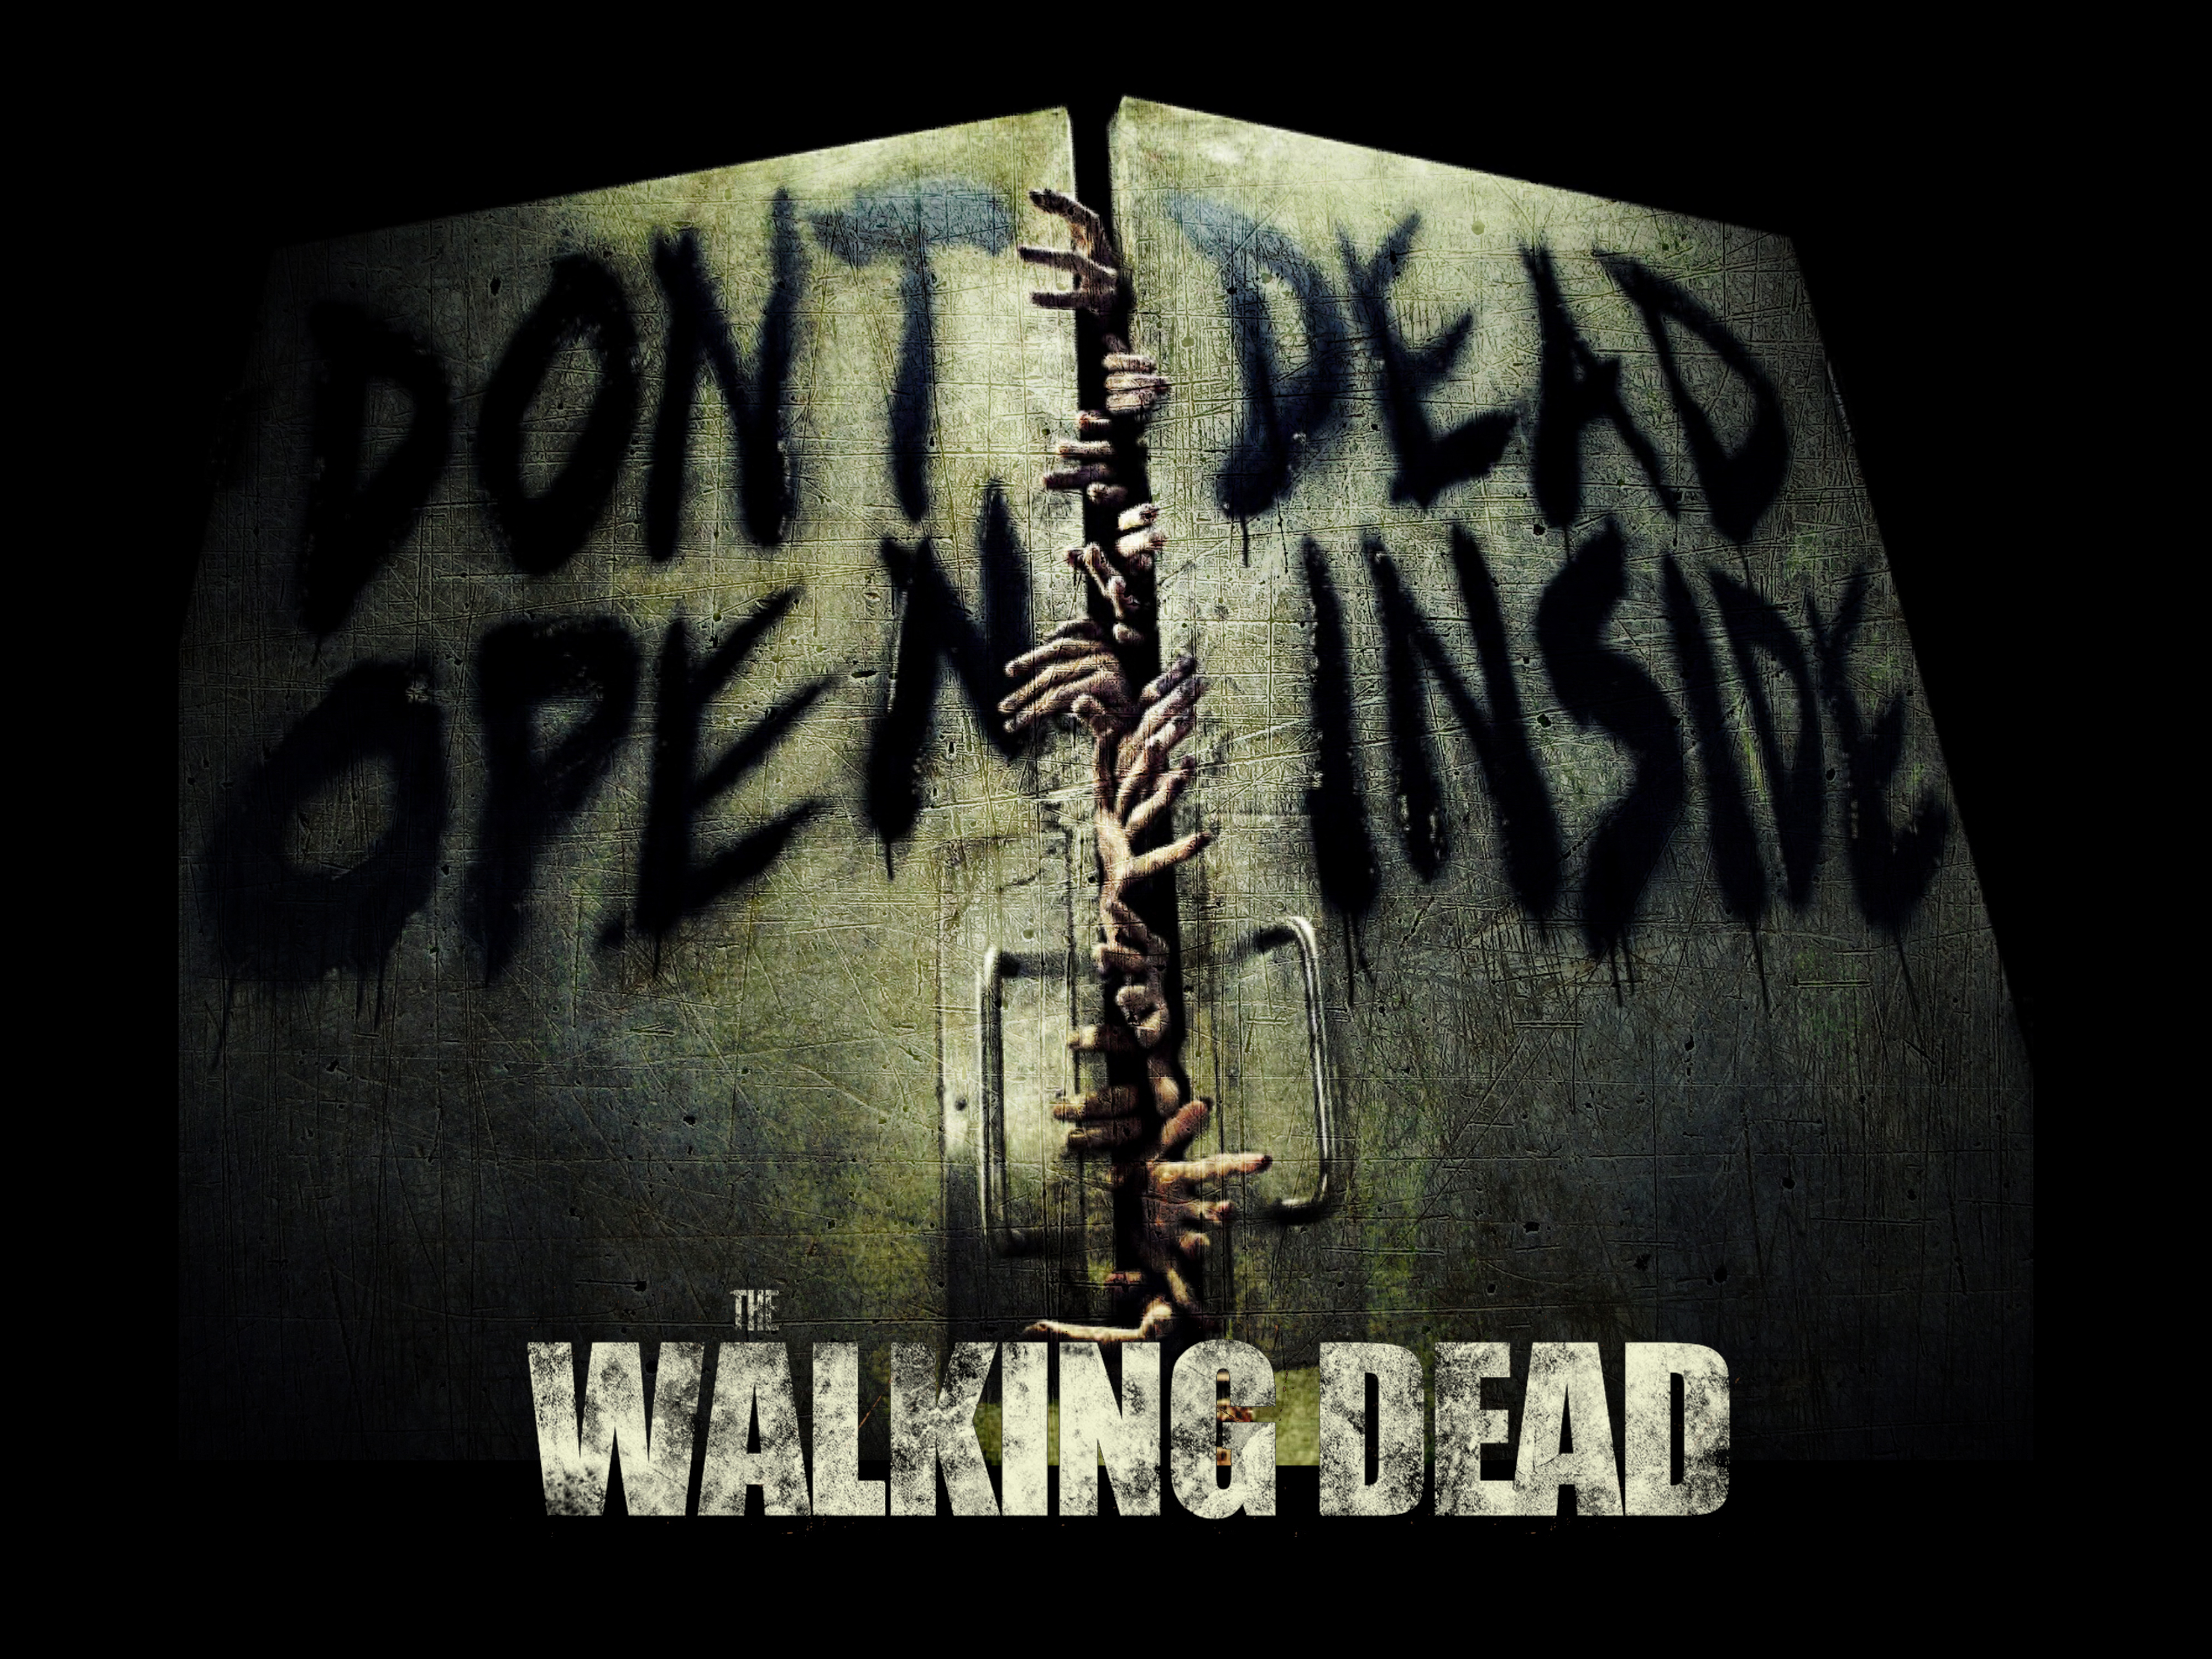 The Walking Dead wallpaper the walking dead 013jpg 4000x3000